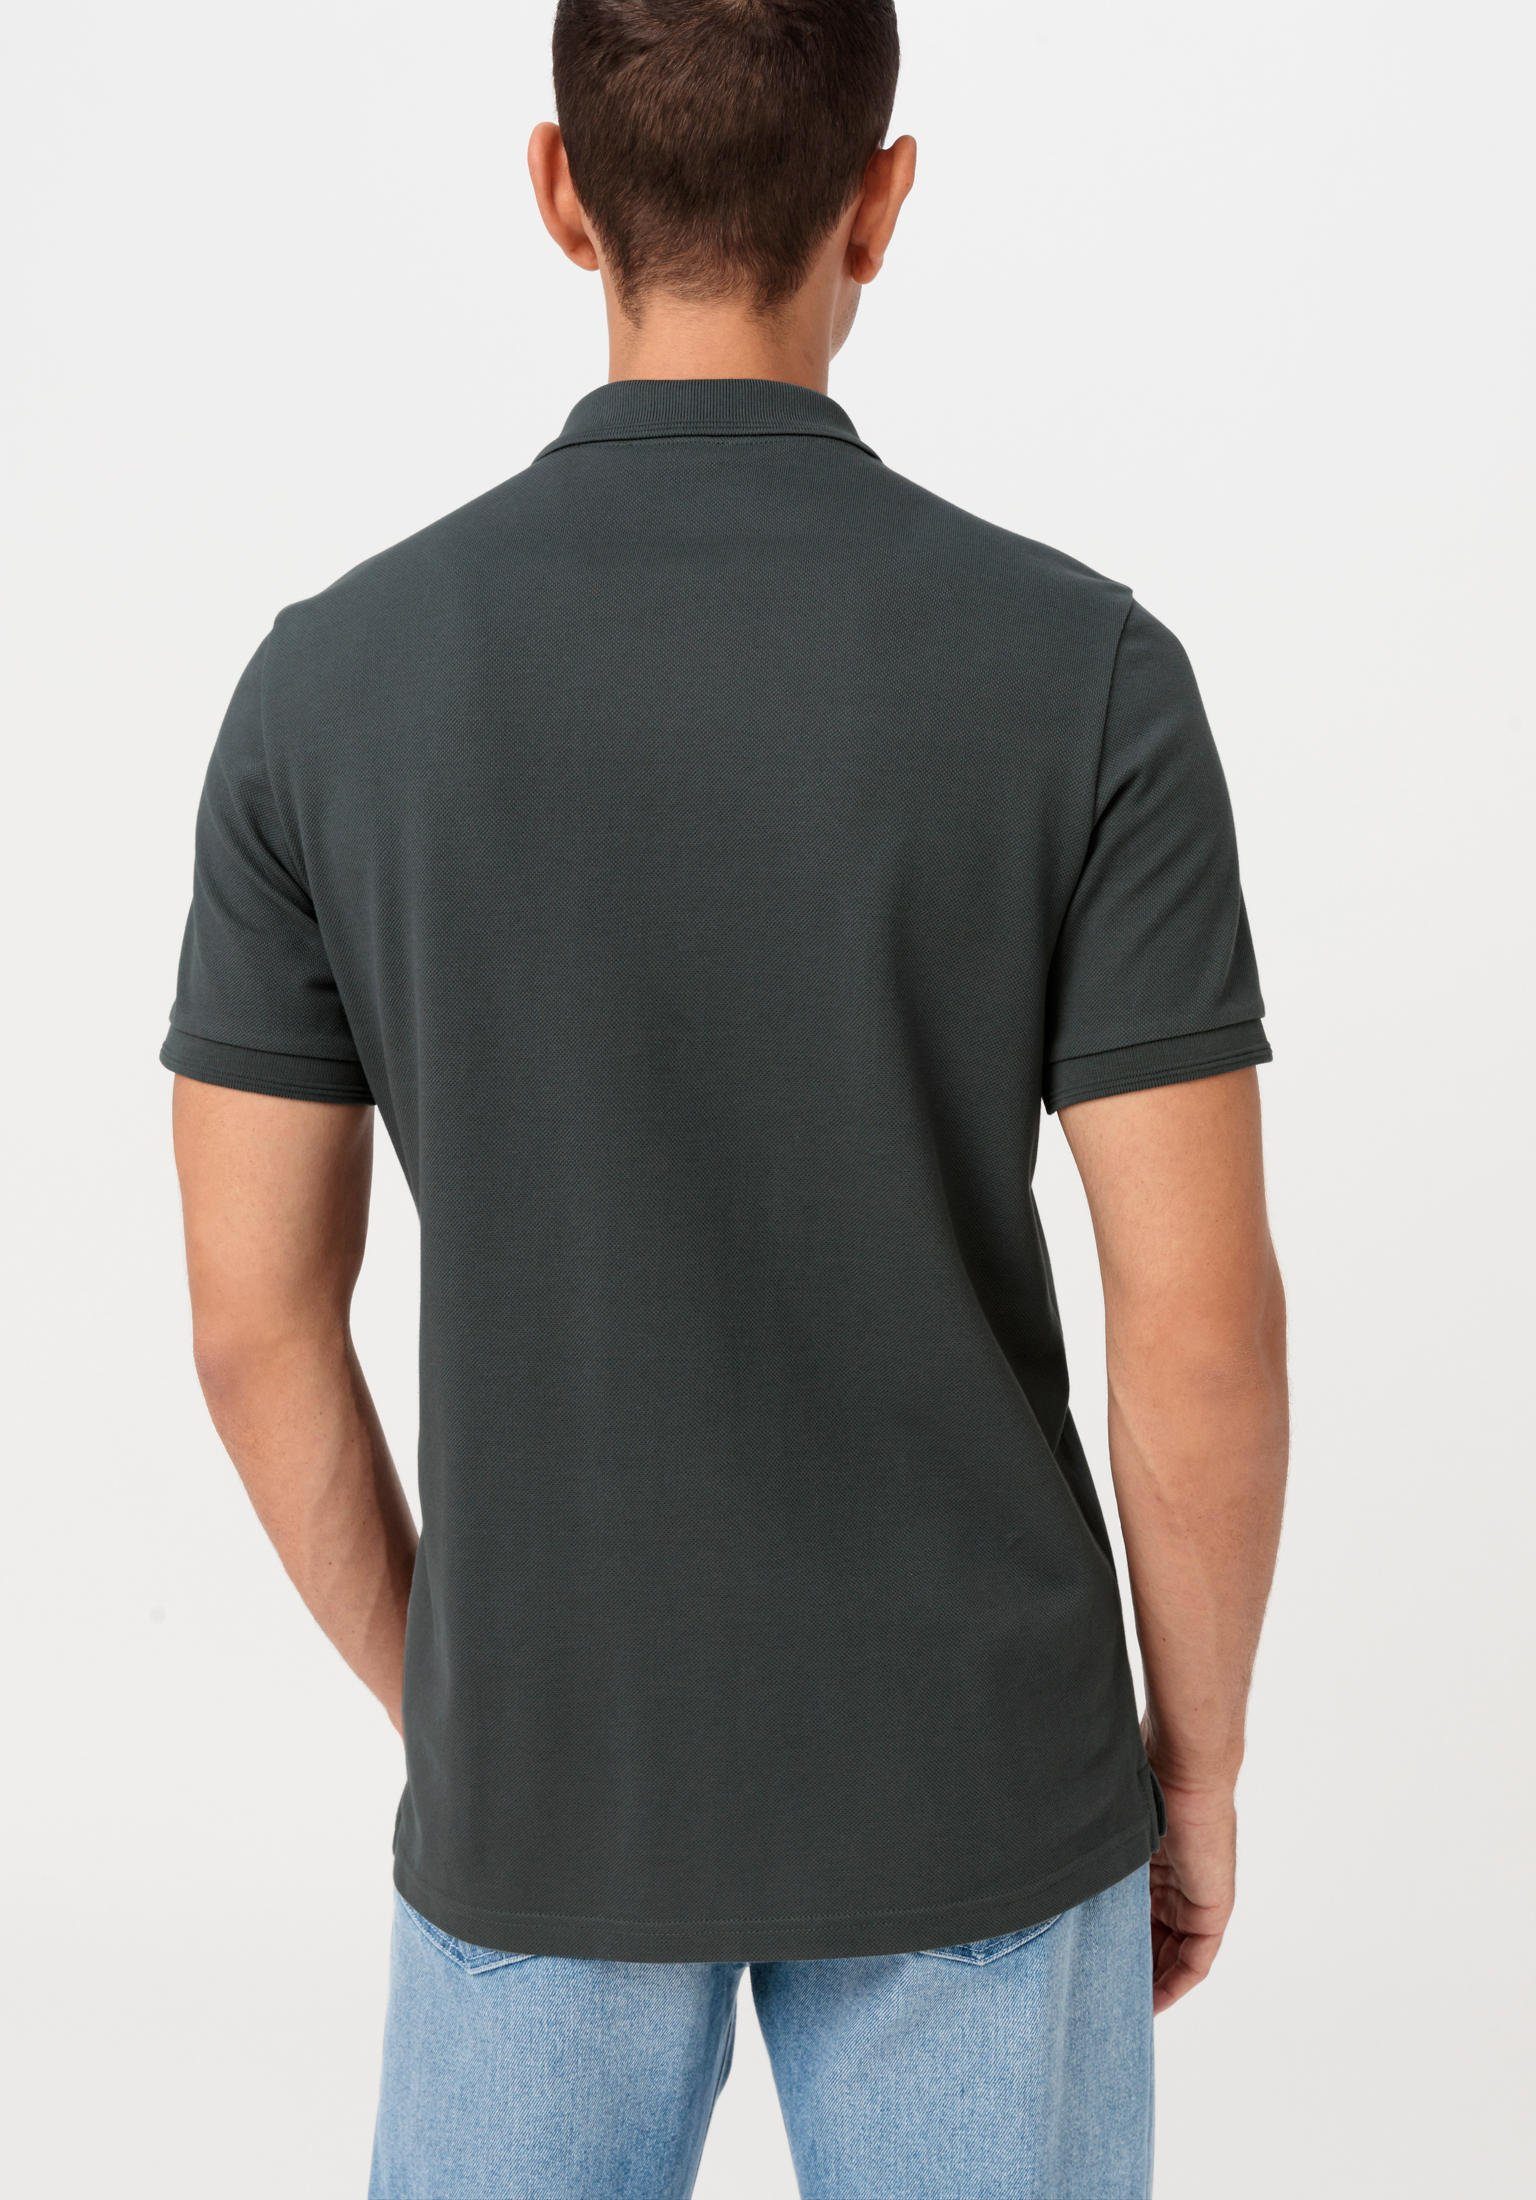 T-Shirt Zwirnjersey dunkelgrün Hessnatur Bio-Baumwolle aus reiner